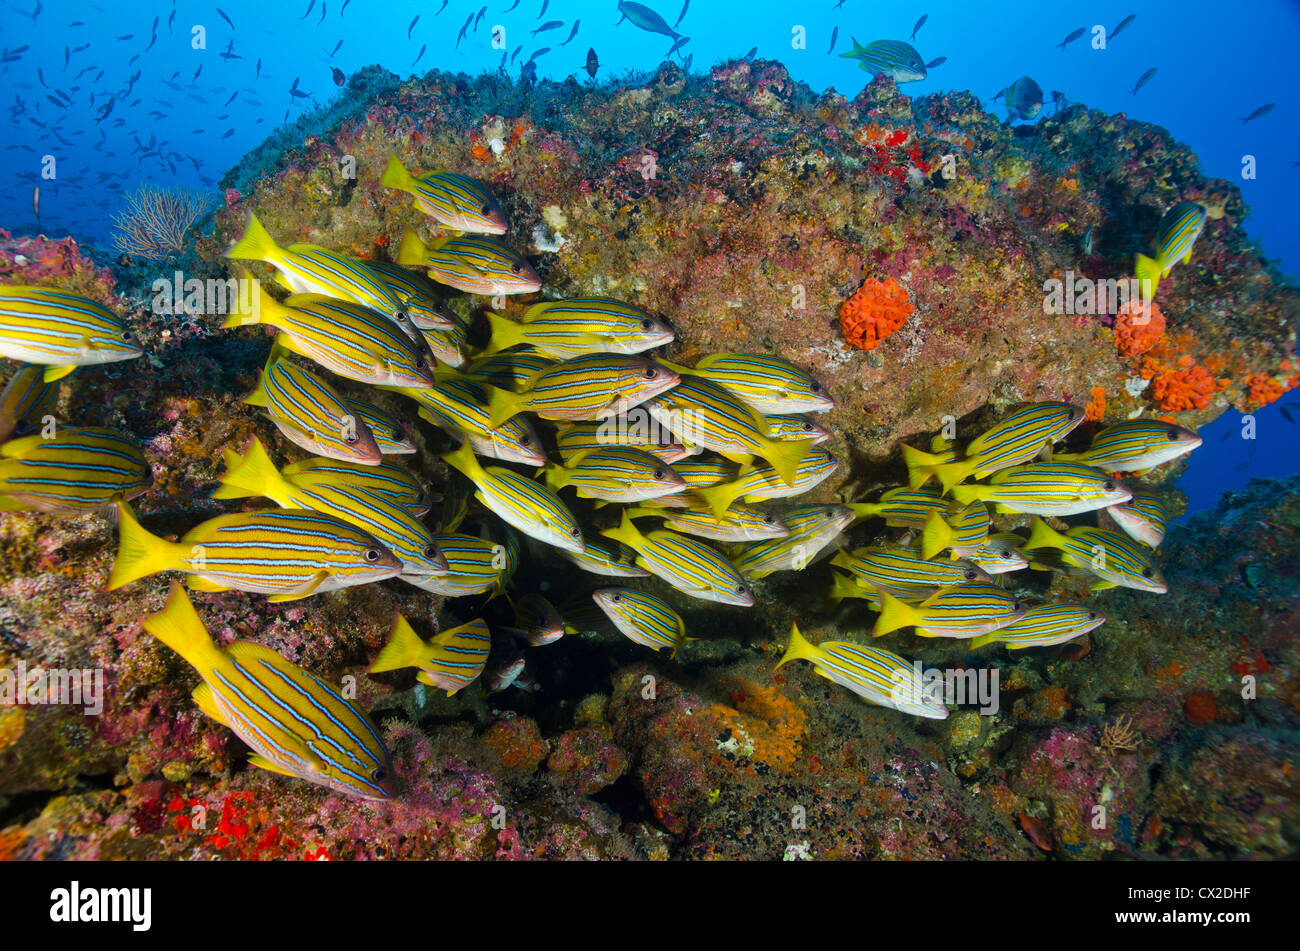 Arrecifes sumergidos en la Isla del Coco, Costa Rica, pescado pargo, ronco, escuela de peces, peces, vida marina, comunidad, familia, sociedad. Foto de stock